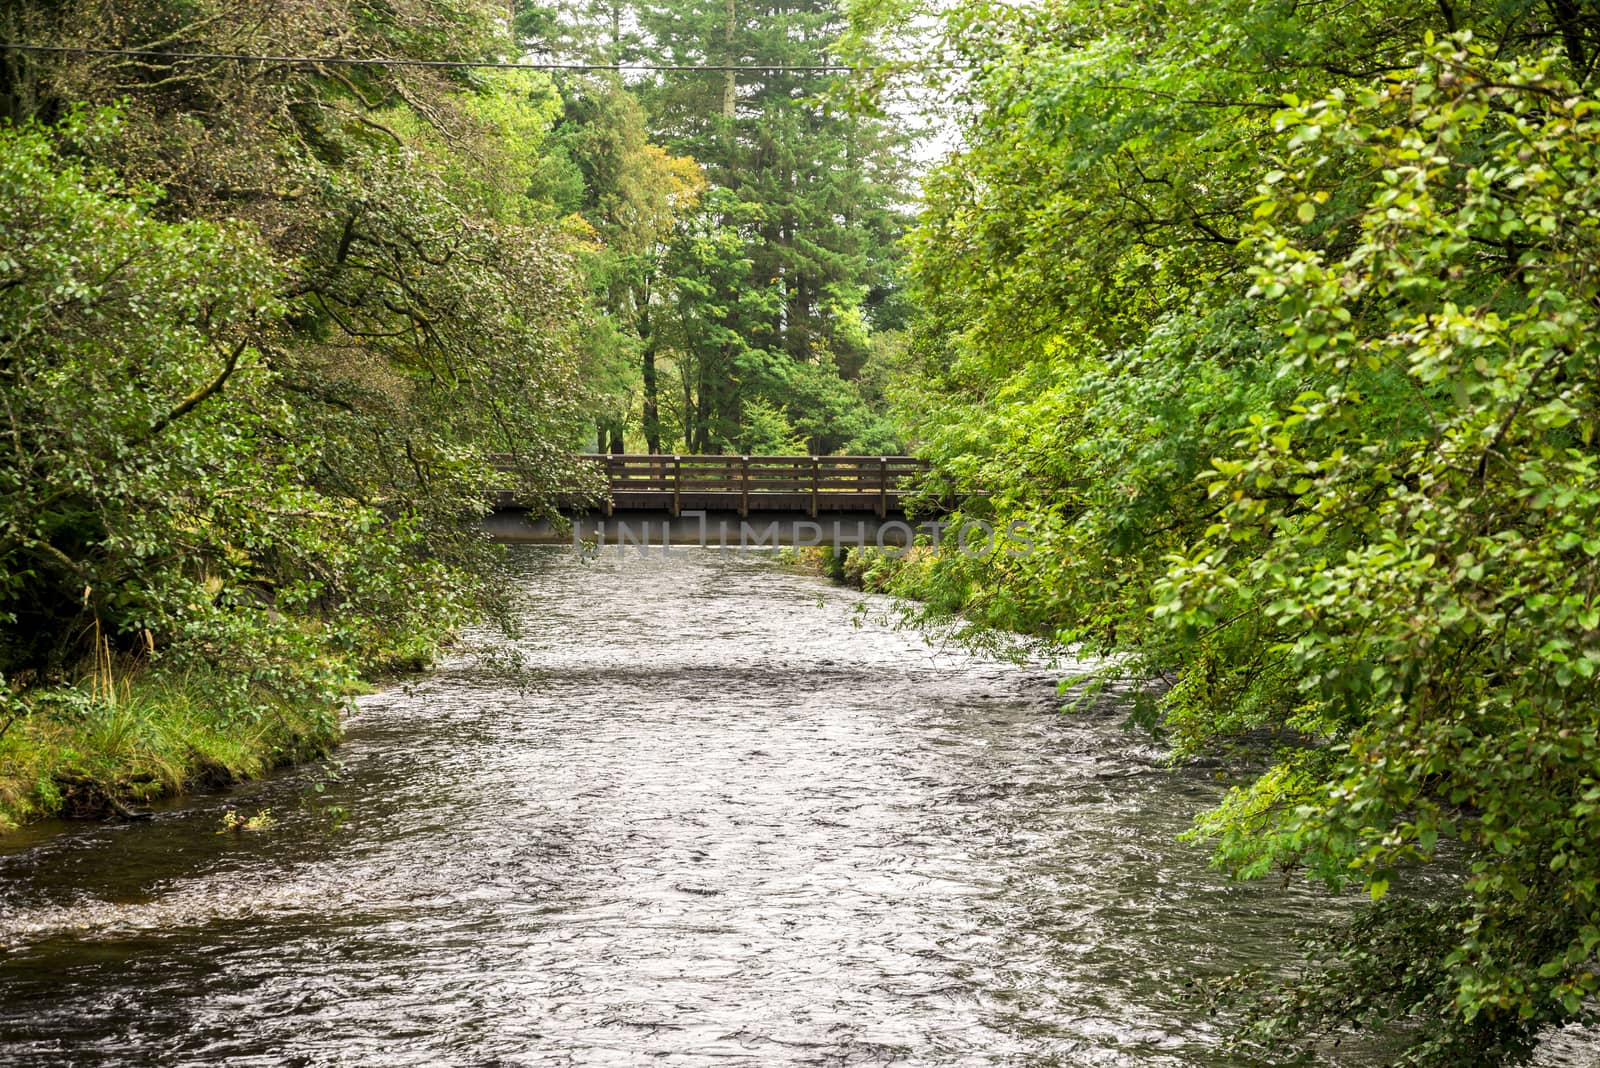 A small pedestrian bridge over river Eachaig in Benmore Botanic Garden, Scotland by anastasstyles